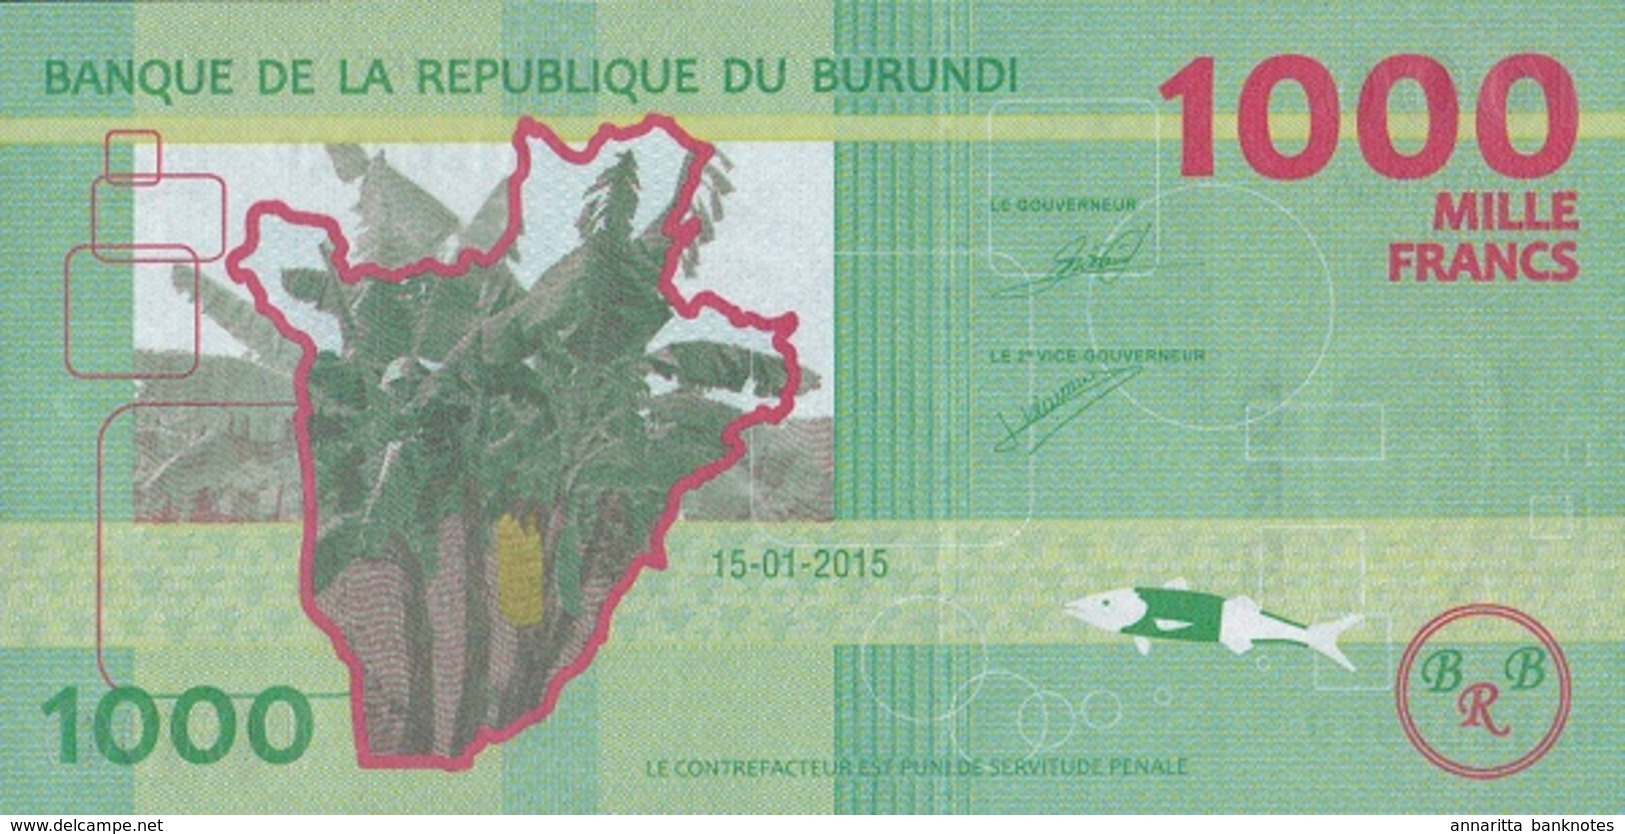 Burundi (BRB) 1000 Francs 2015 UNC Cat No. P-51a / BI237a - Burundi